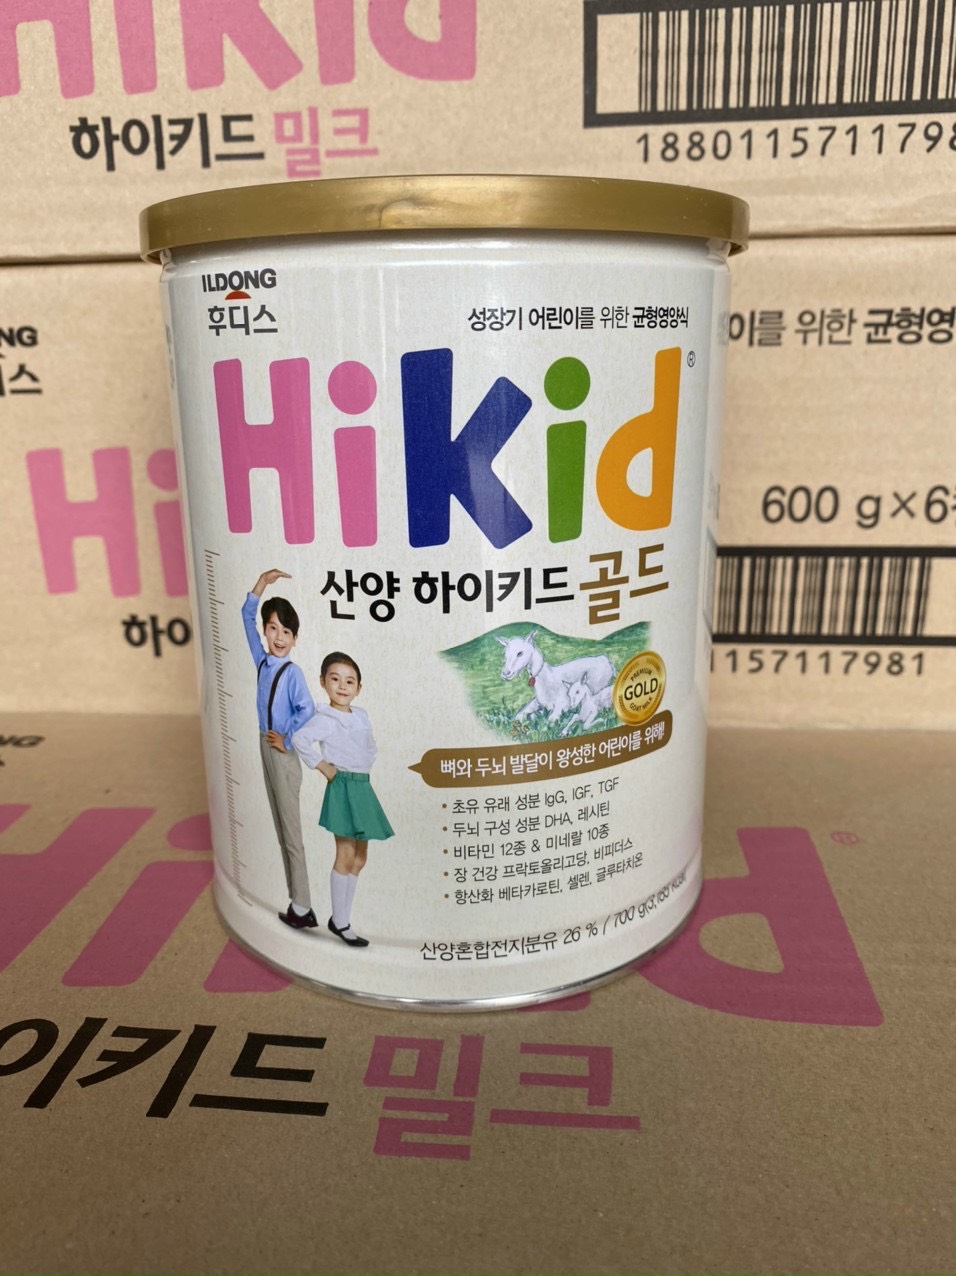 Sữa dê Hikid Hàn Quốc 700g cho bé 1-9 tuổi